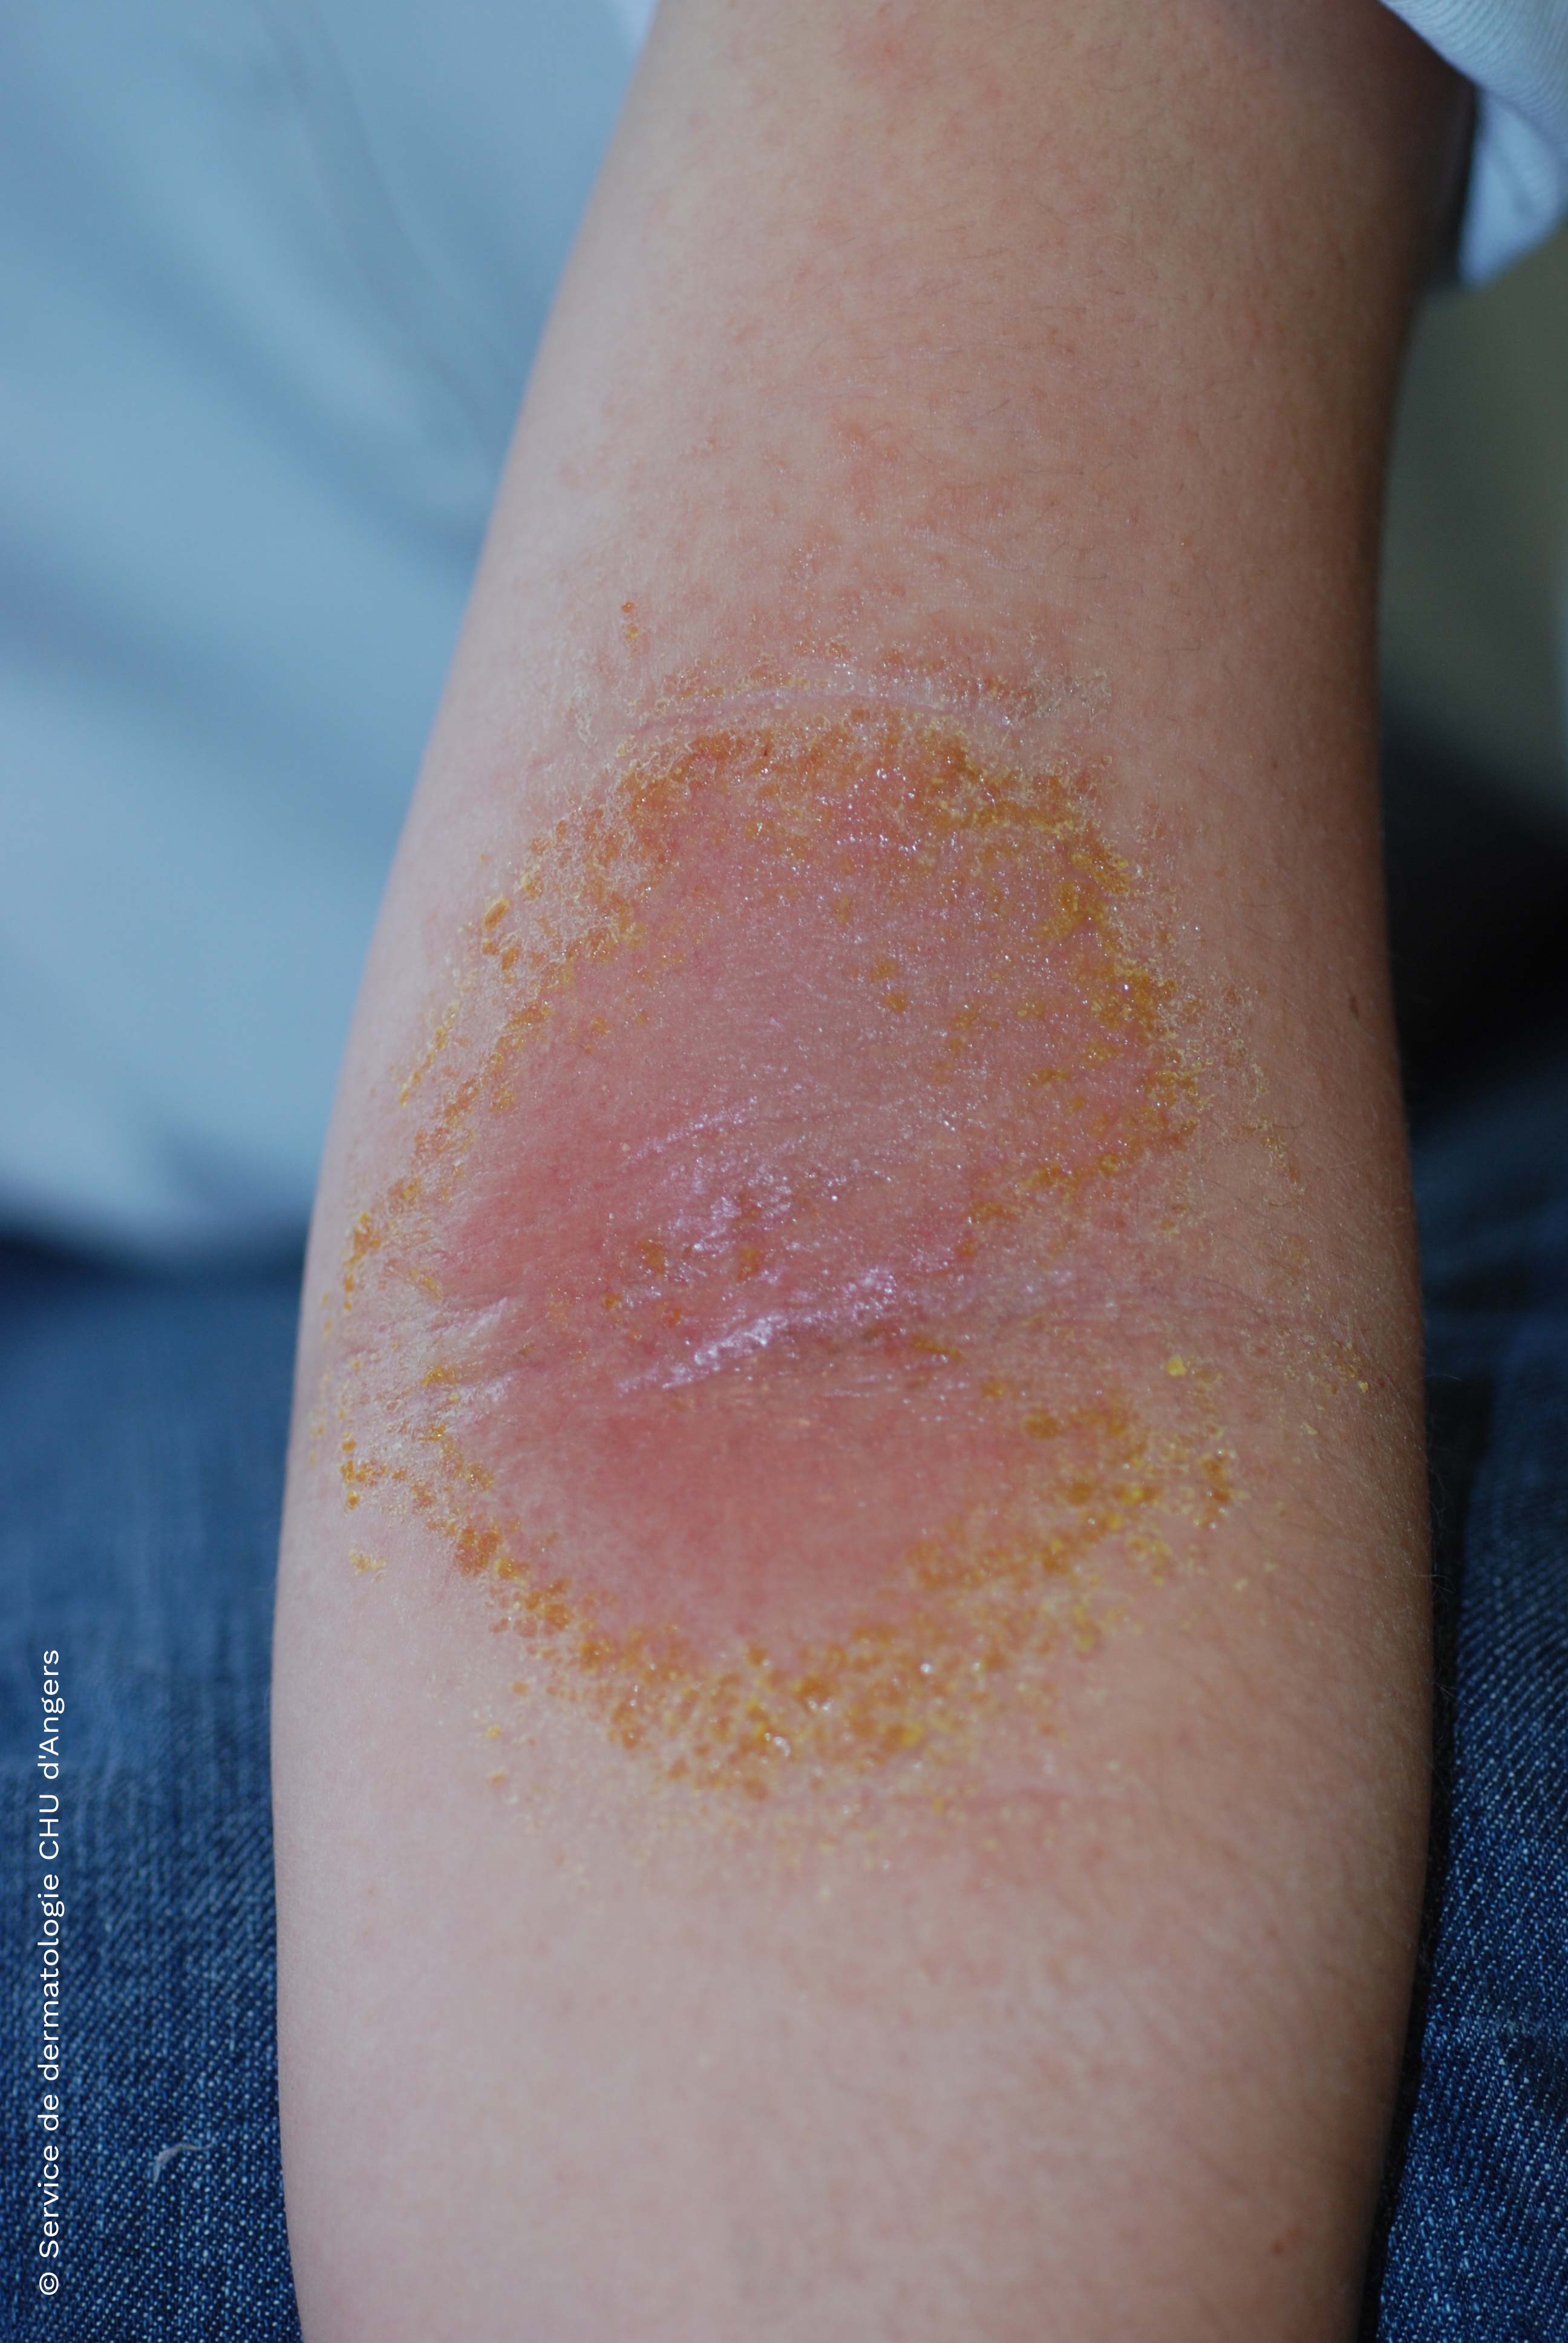 Allergic arm contact eczema